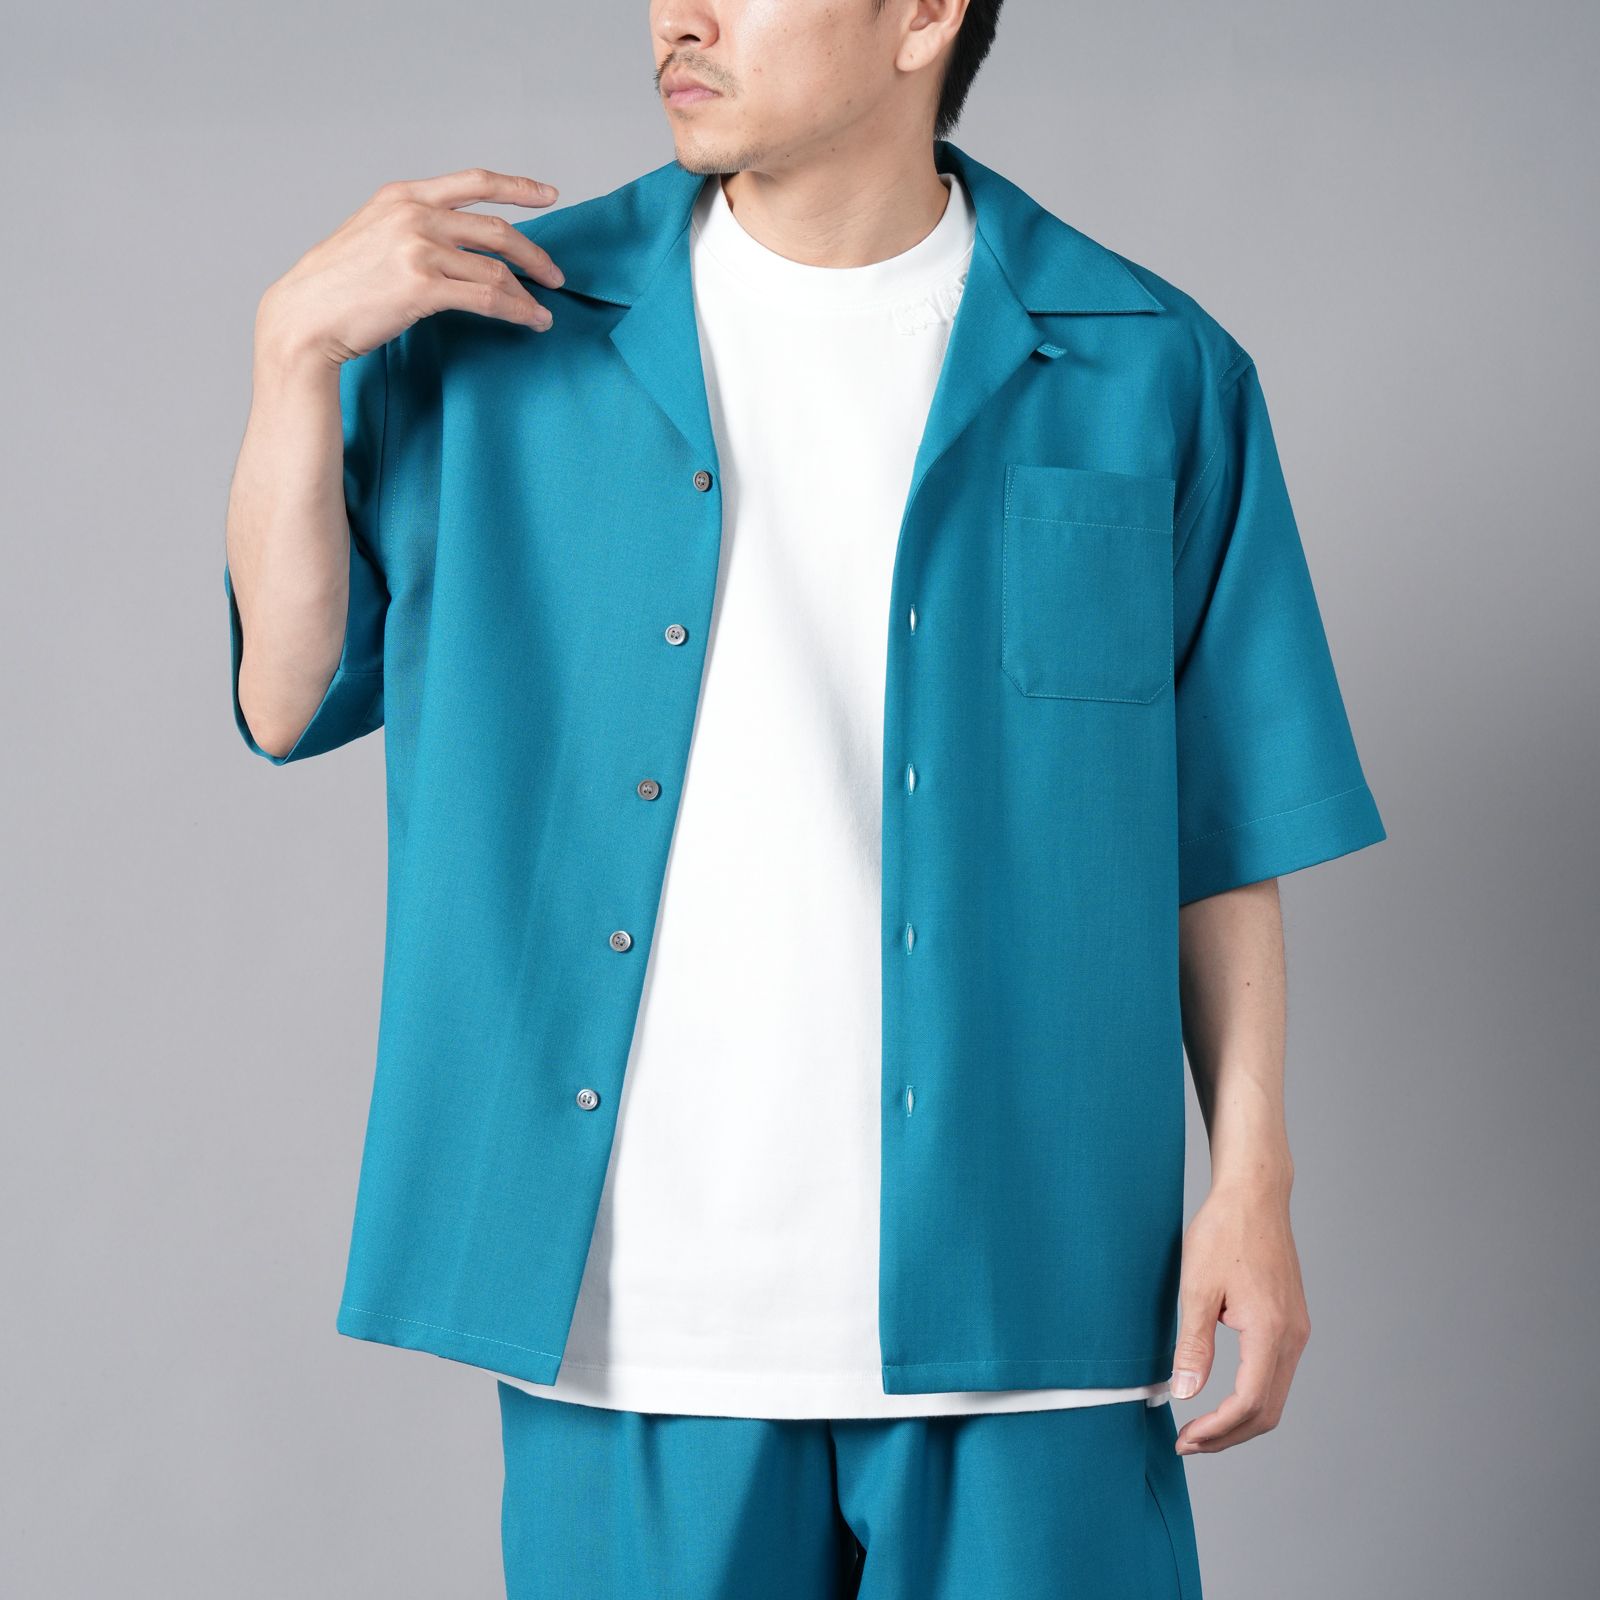 MARNI - S/S SHIRTS / ショートスリーブシャツ / 半袖シャツ (ブルー